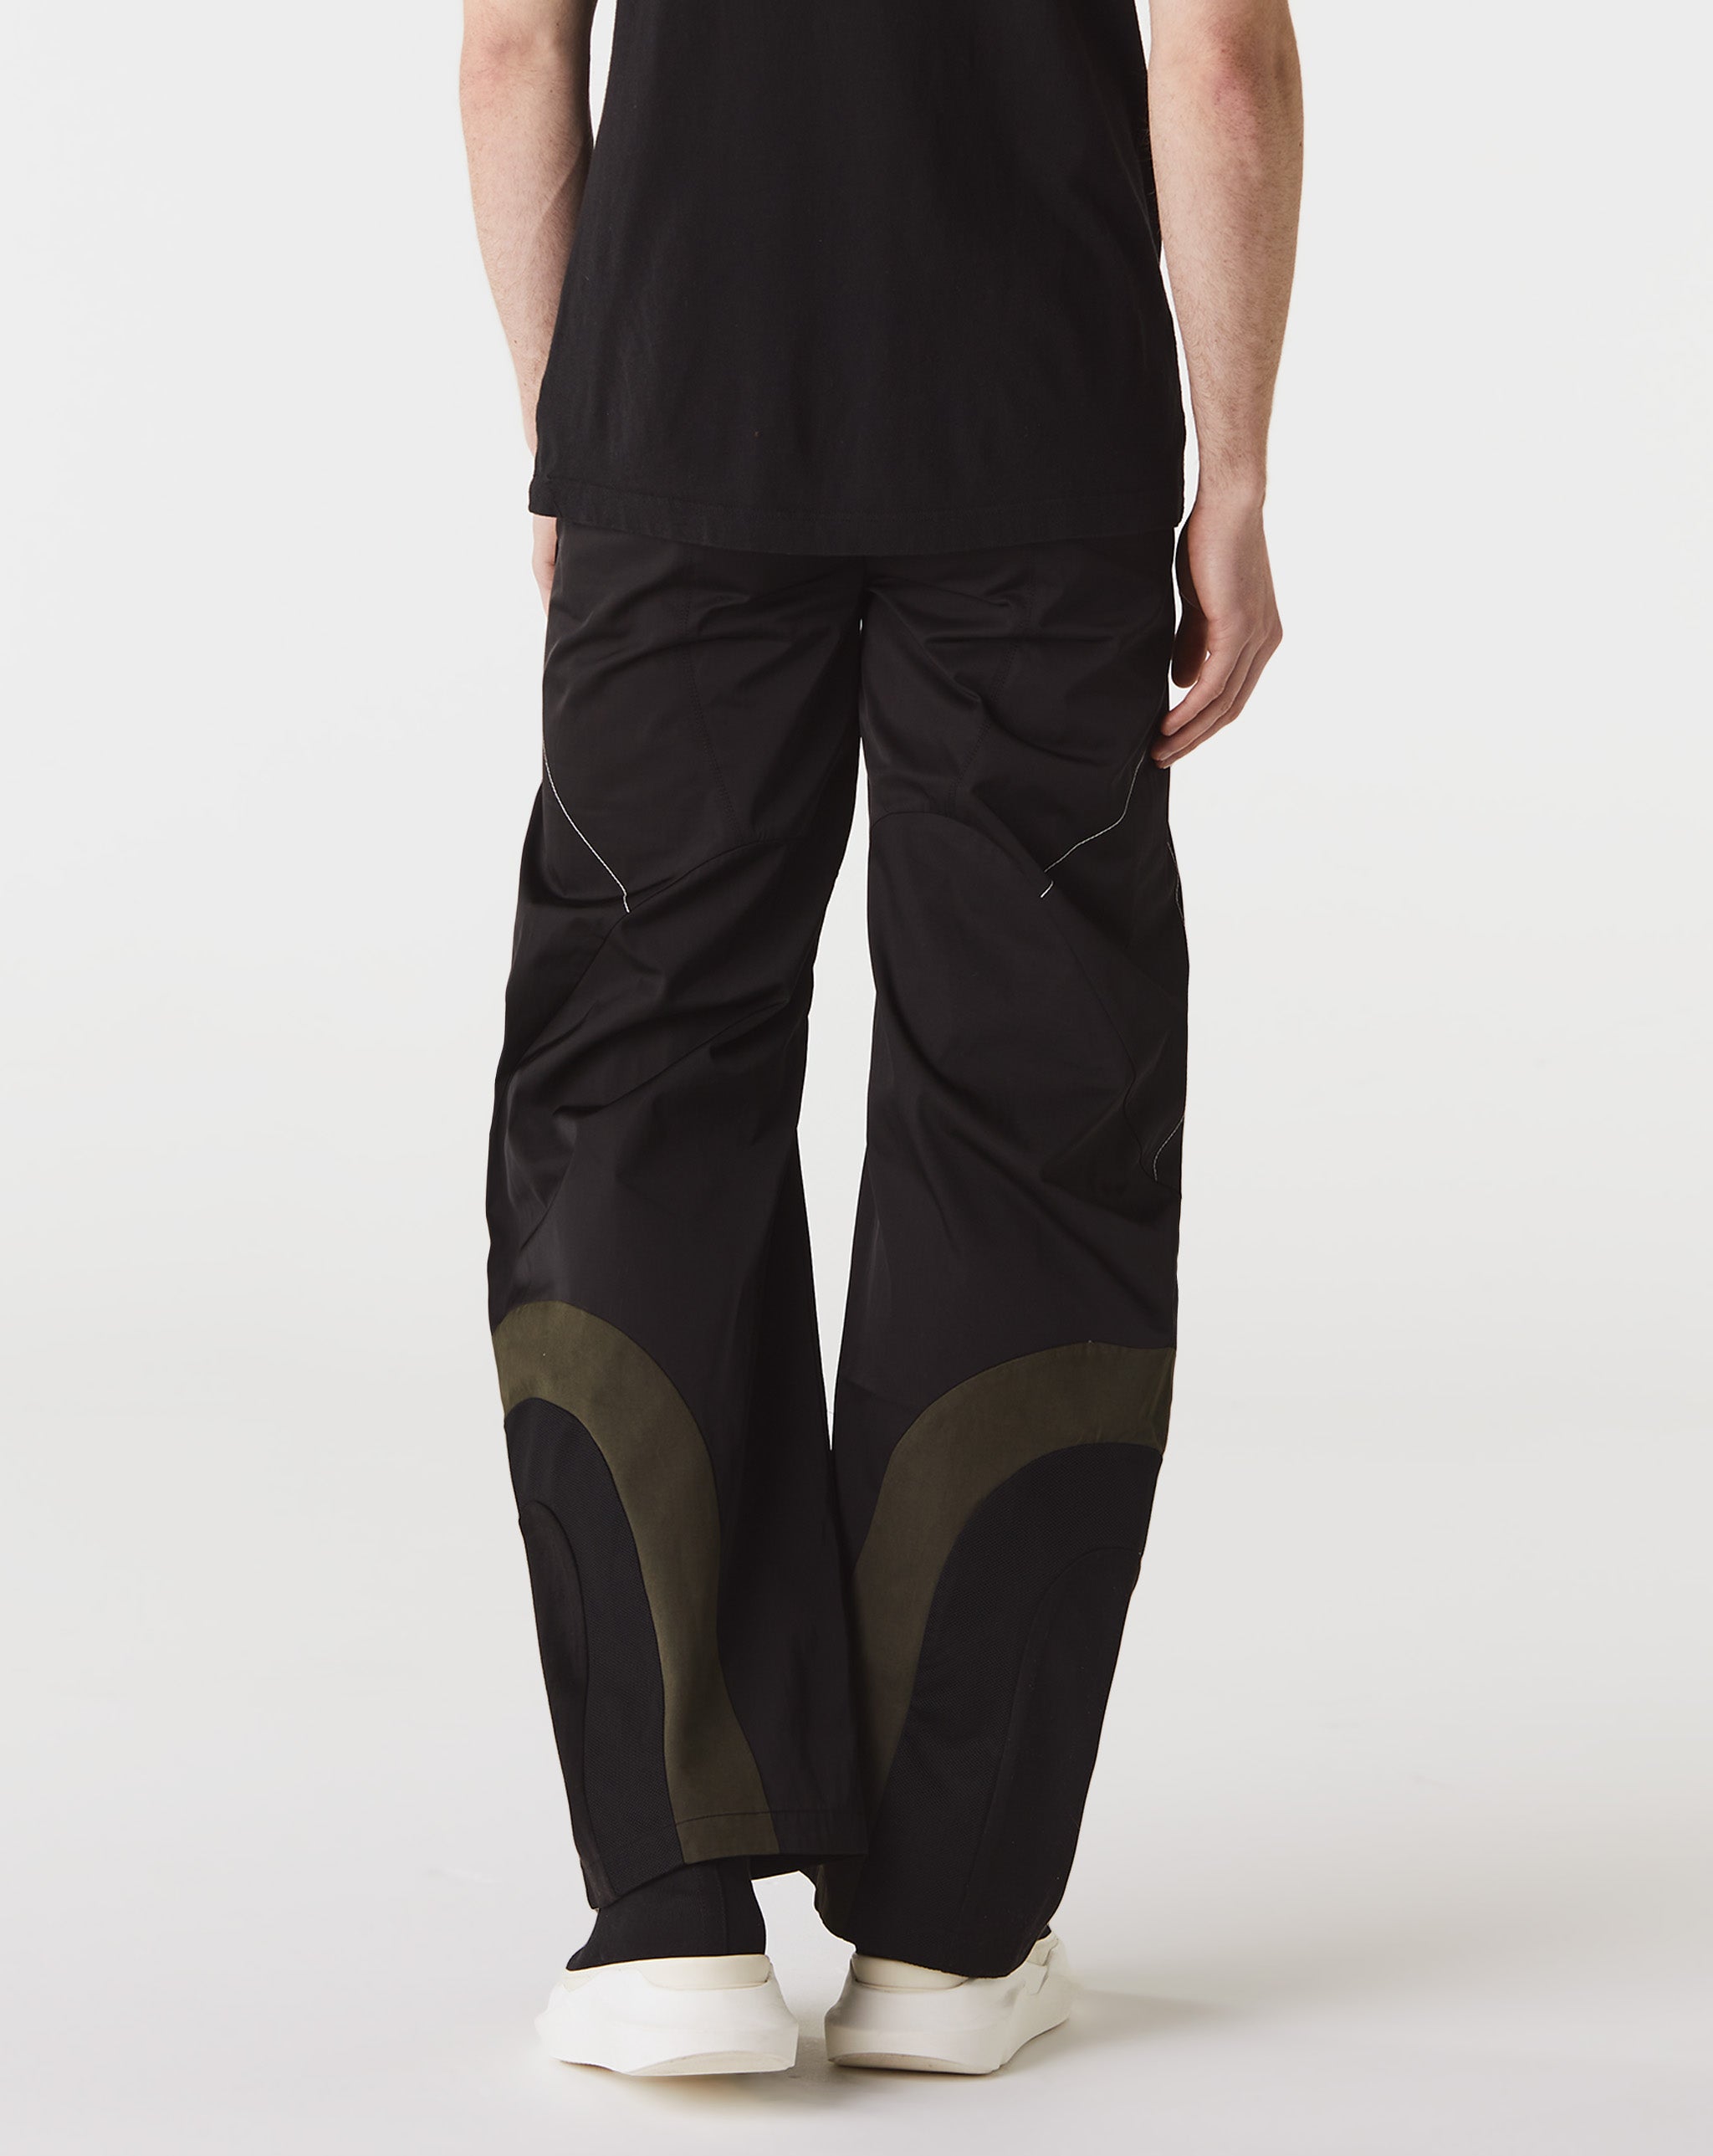 FFFPOSTALSERVICE Articulated Waist Bag Trousers V1  - Cheap Cerbe Jordan outlet